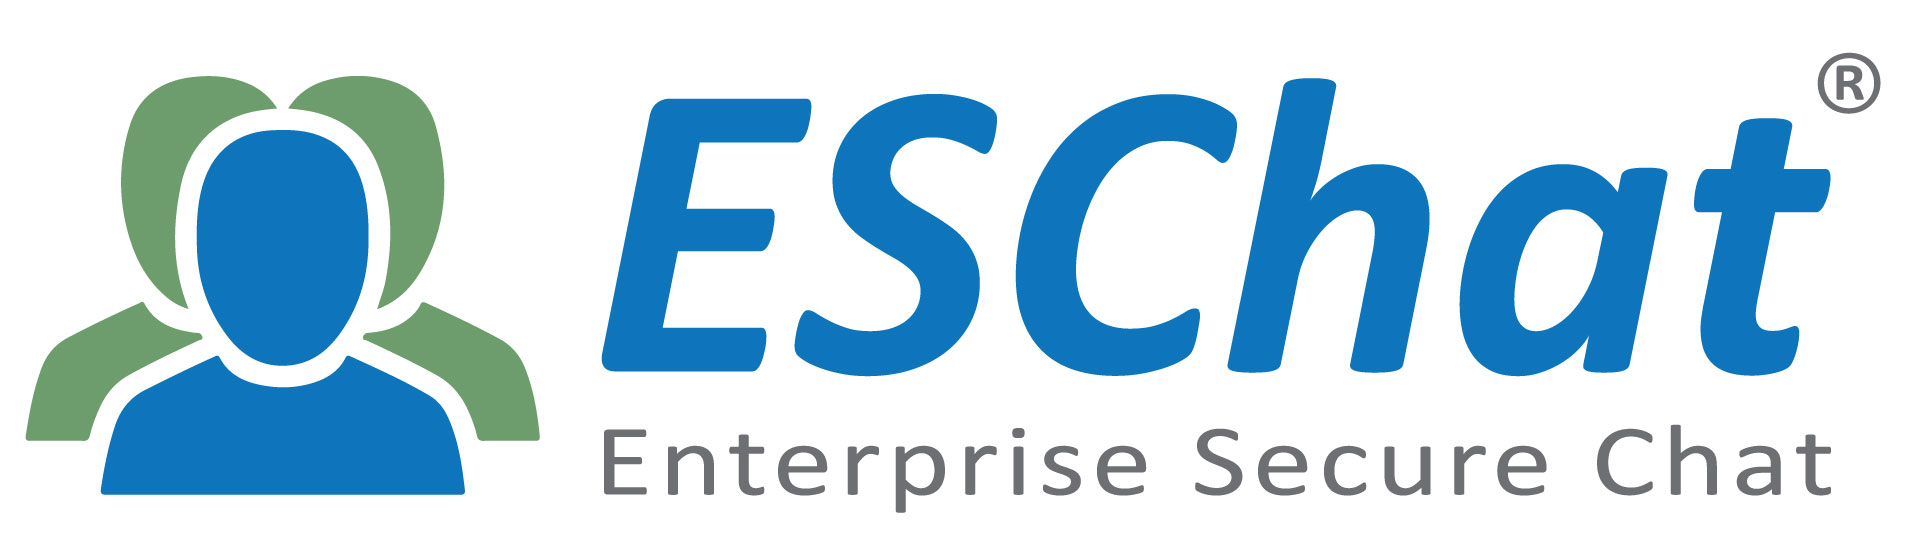 Enterprise Secure Chat (ESChat)